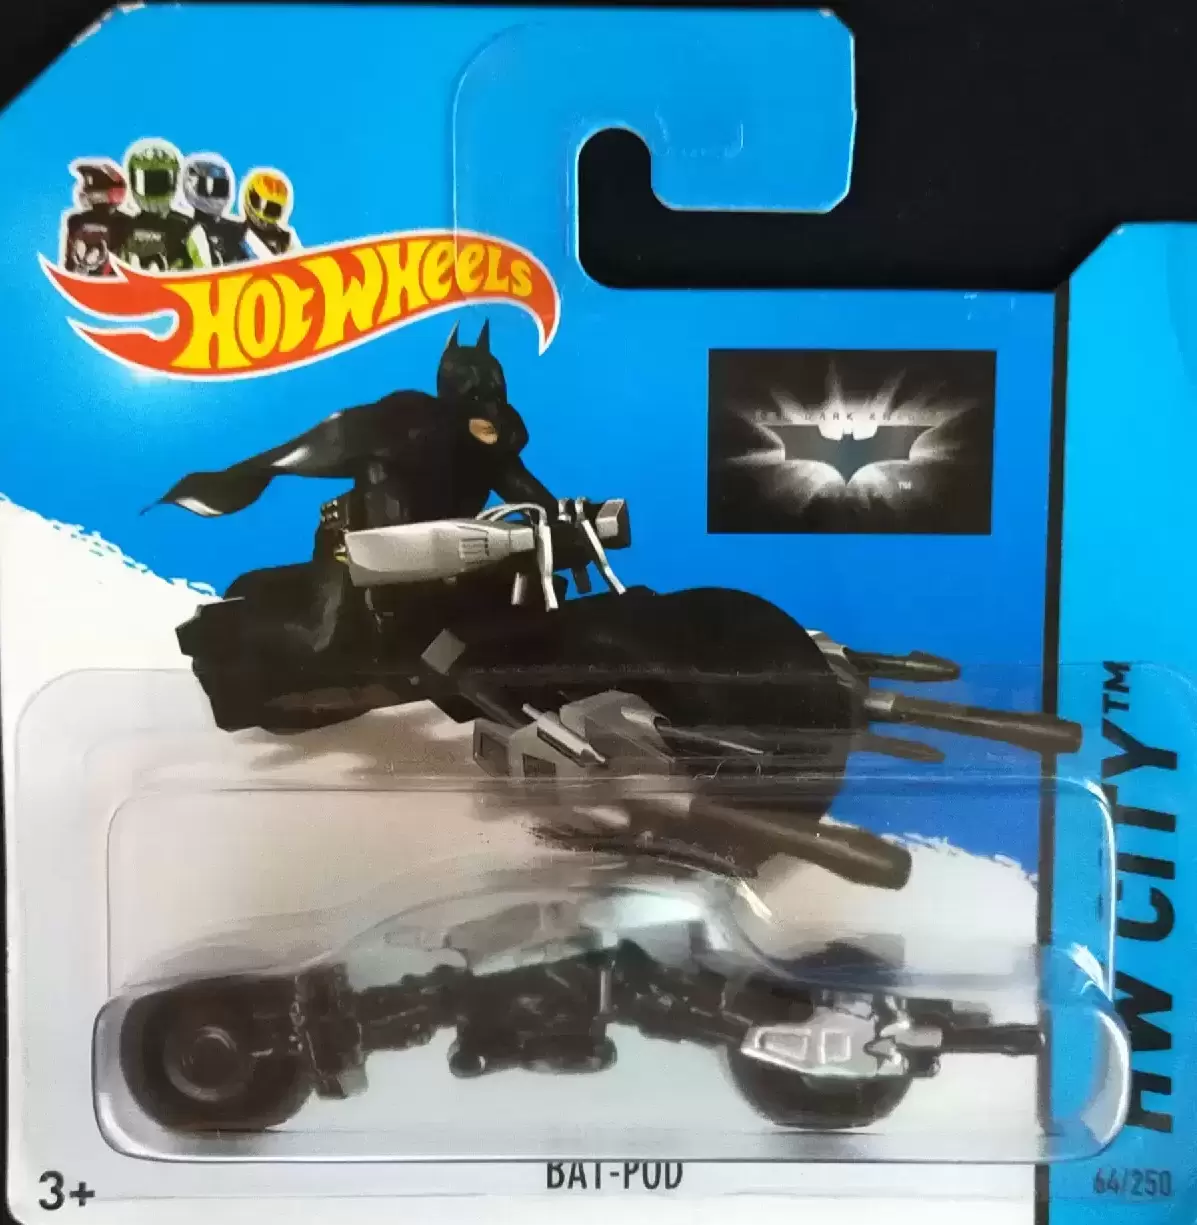 Hot Wheels Classiques - Bat-Pod (64/250)